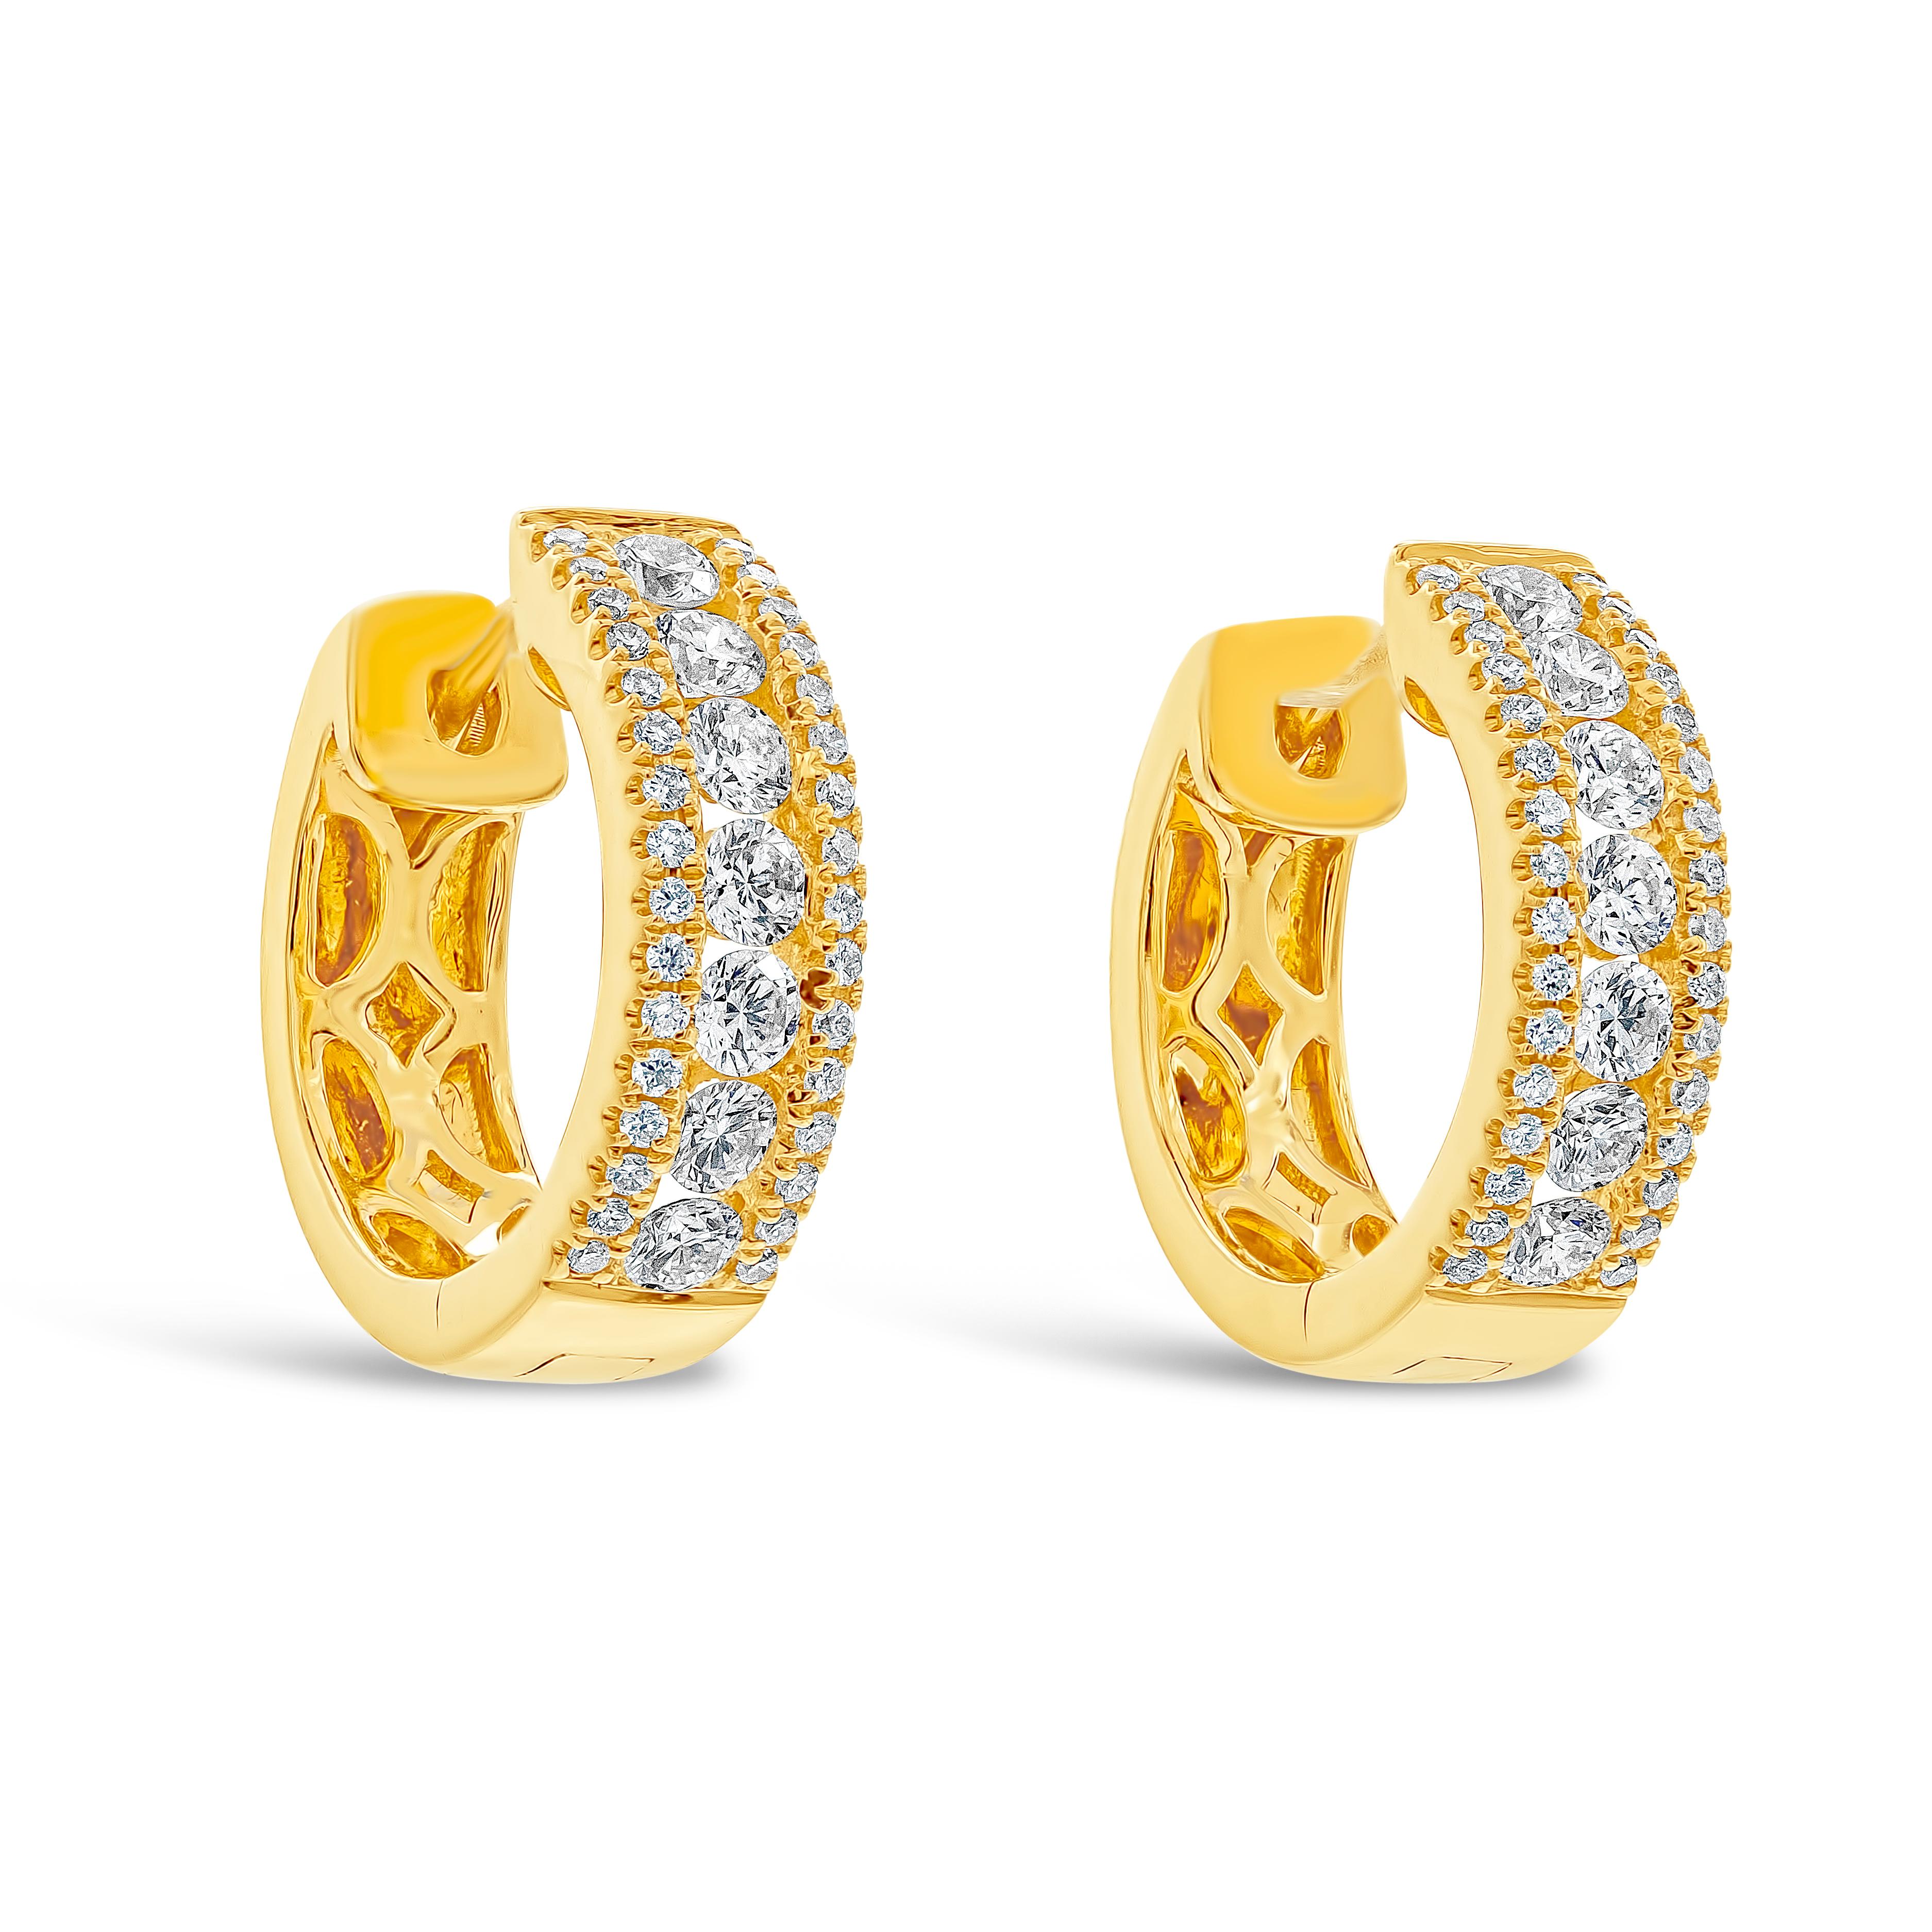 Ein schlichtes Paar Creolen mit einer Reihe runder Brillanten, die zwischen runden Nahtlos-Diamanten eingefasst sind. Hergestellt aus 18k Gelbgold. Die Diamanten wiegen insgesamt 0,61 Karat. 

Roman Malakov ist ein Unternehmen, das sich darauf